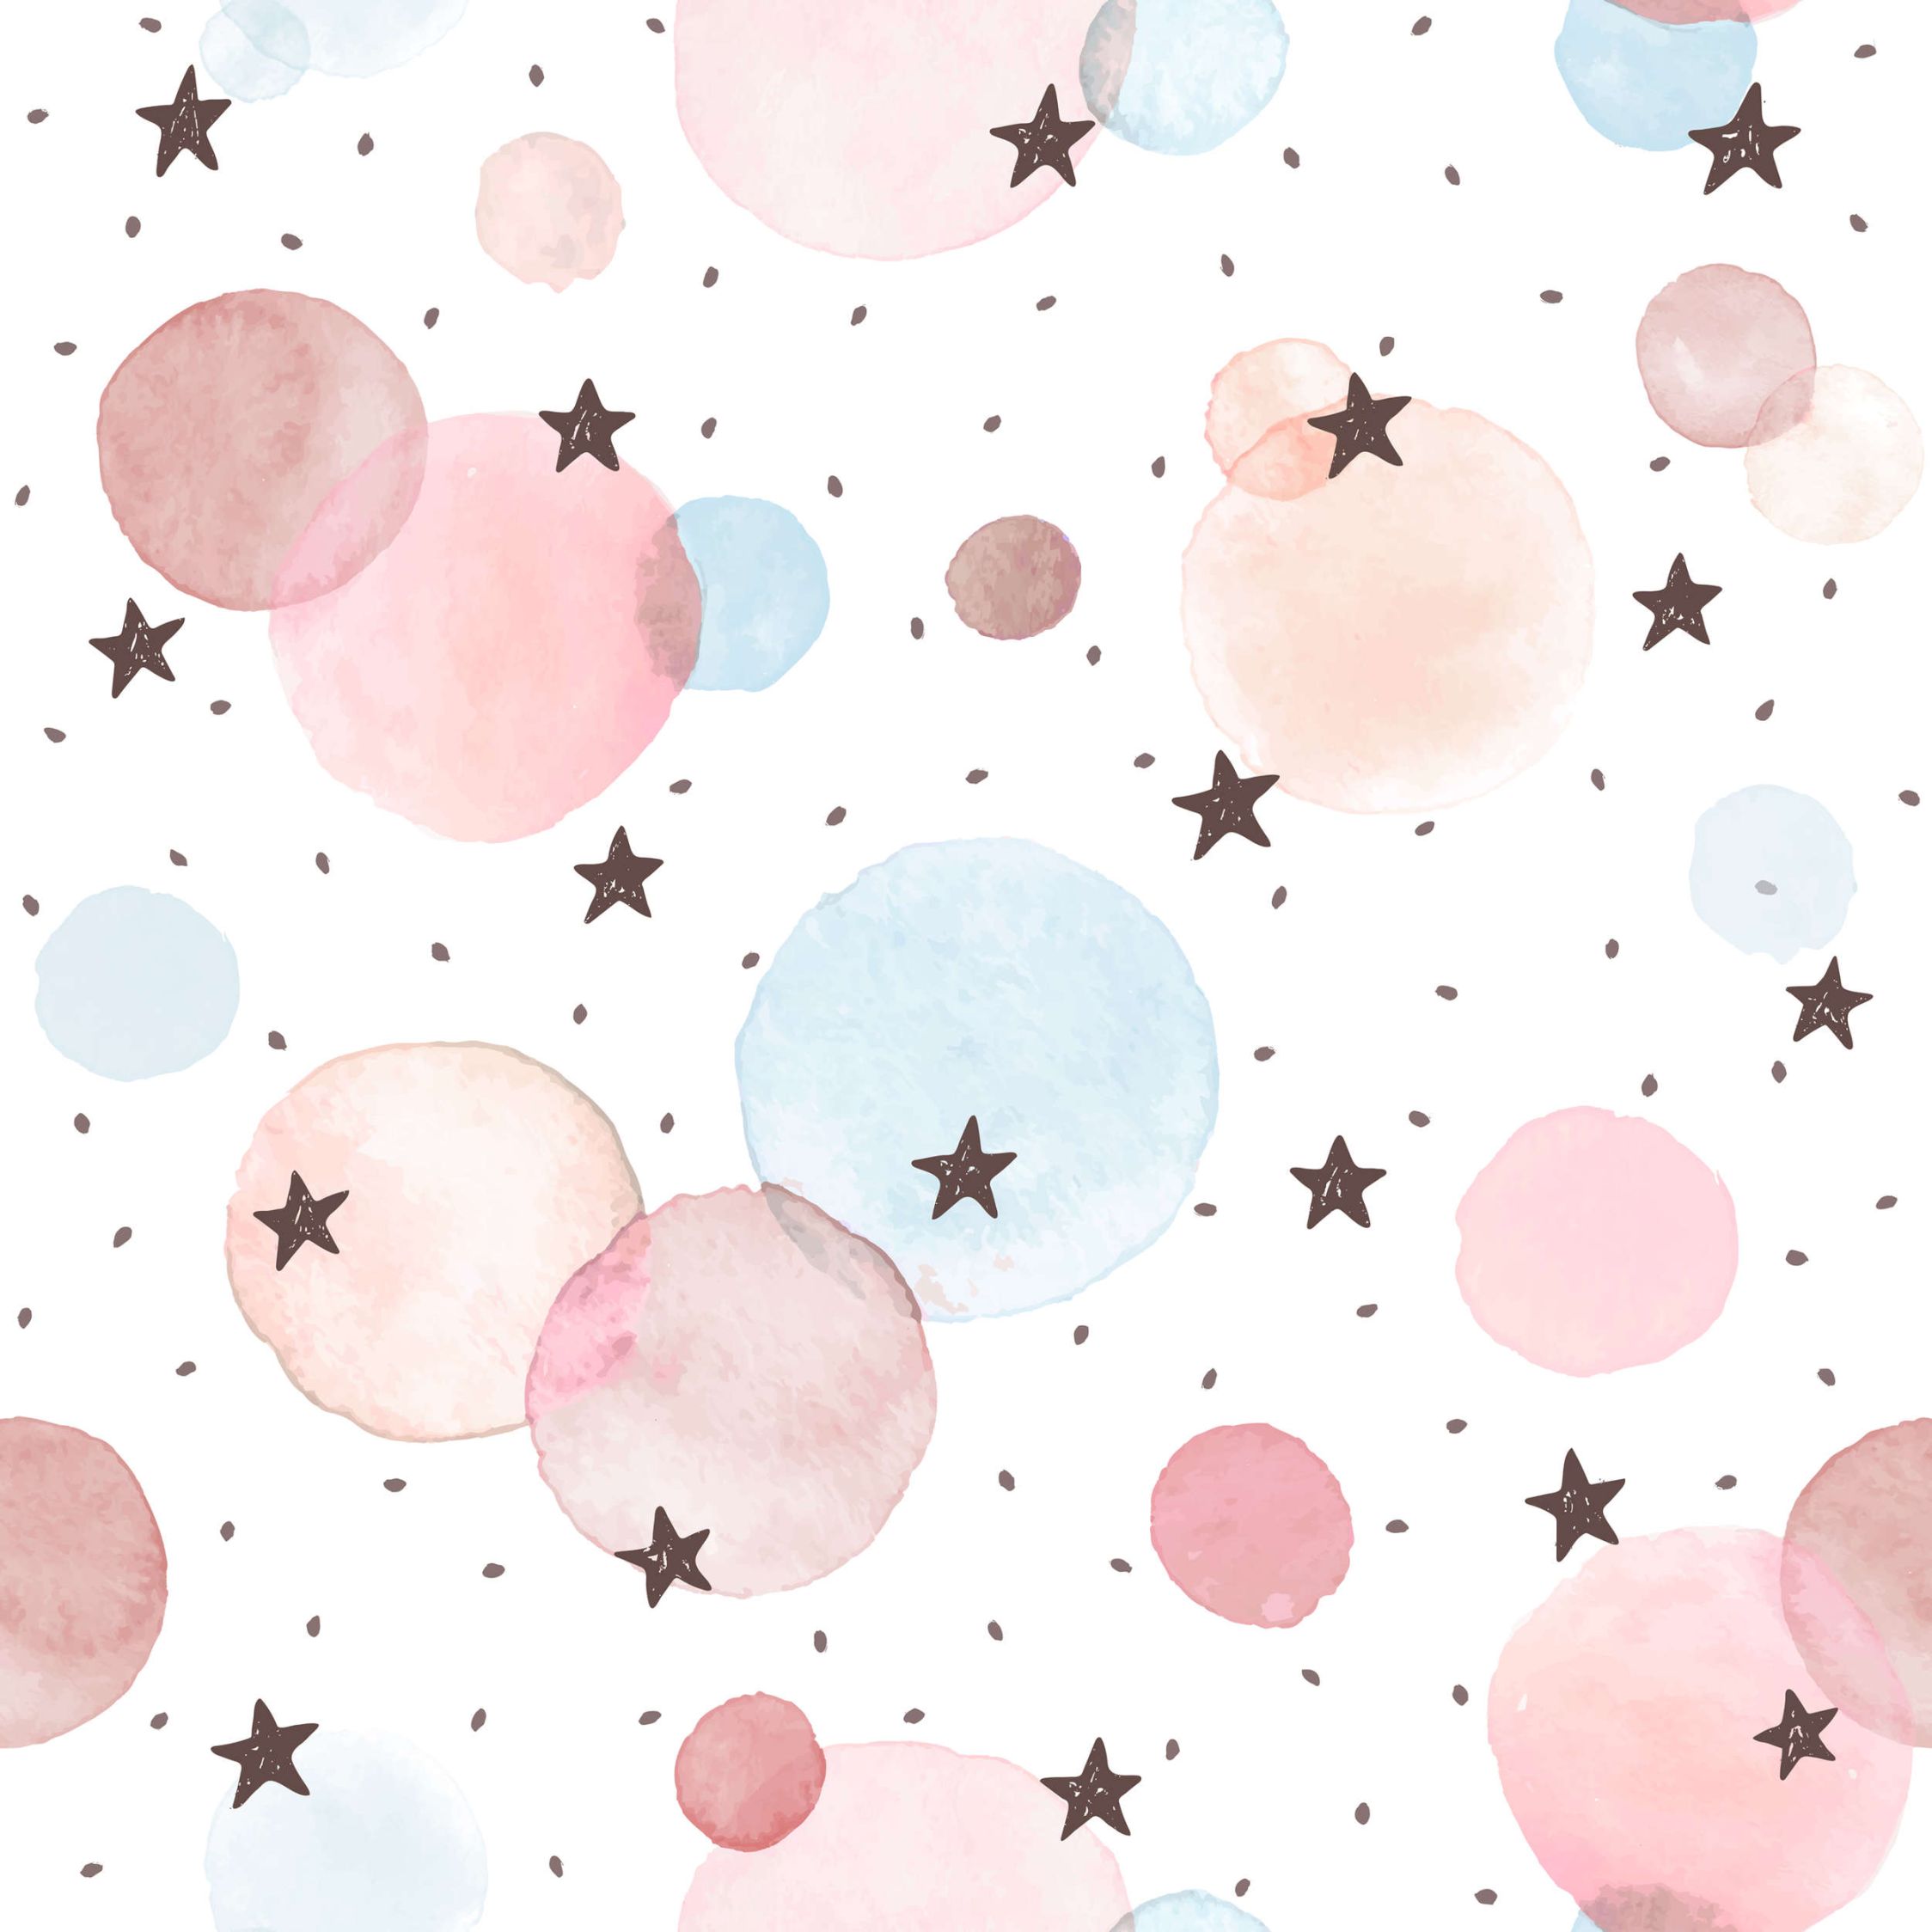             Fototapete fürs Kinderzimmer mit Sternen, Punkten und Kreisen – Glattes & perlmutt-schimmerndes Vlies
        